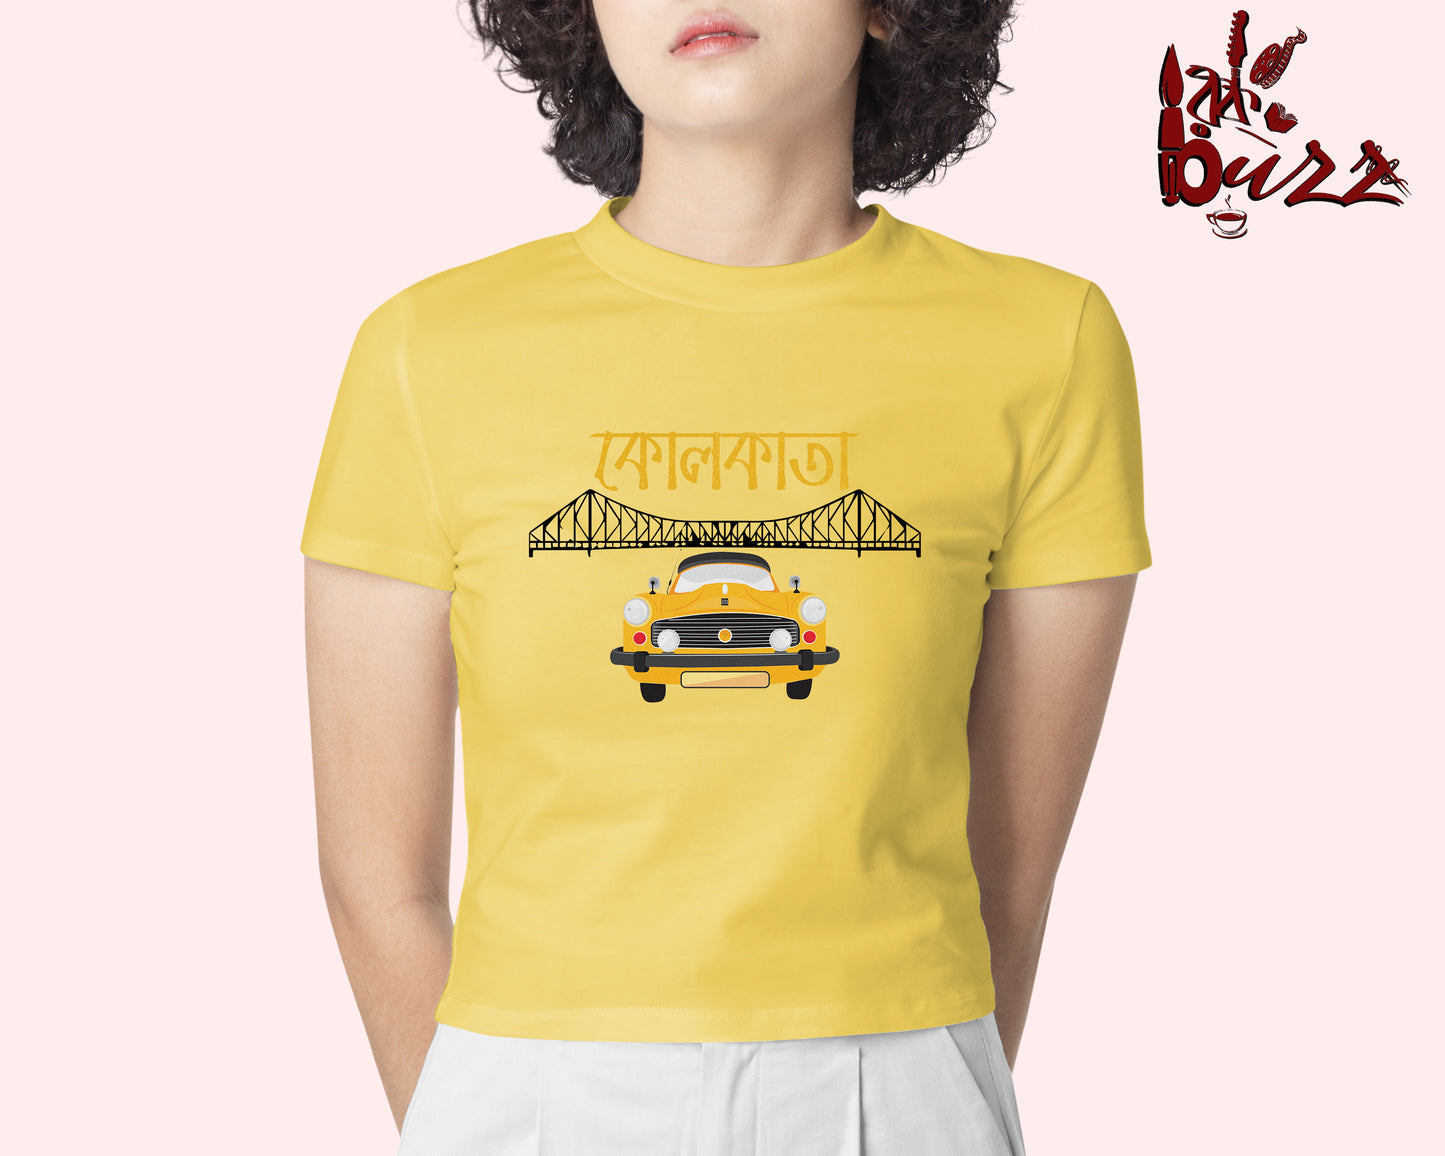 Crop top - Kolkata Taxi printed Bengali women top